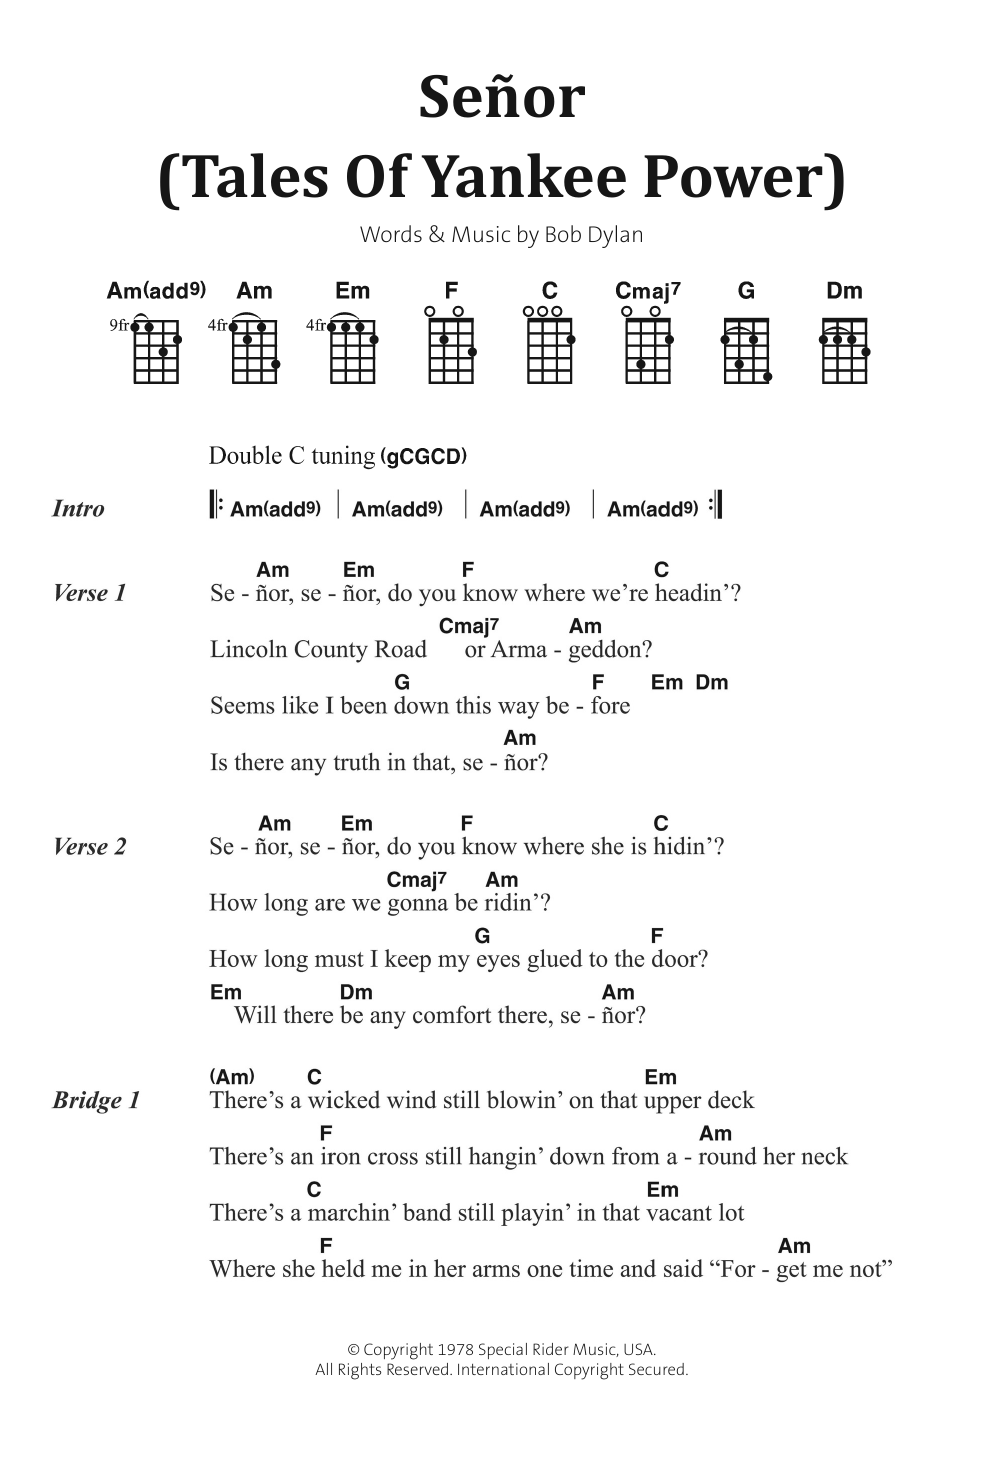 Bob Dylan Senor (Tales Of Yankee Power) Sheet Music Notes & Chords for Ukulele Lyrics & Chords - Download or Print PDF